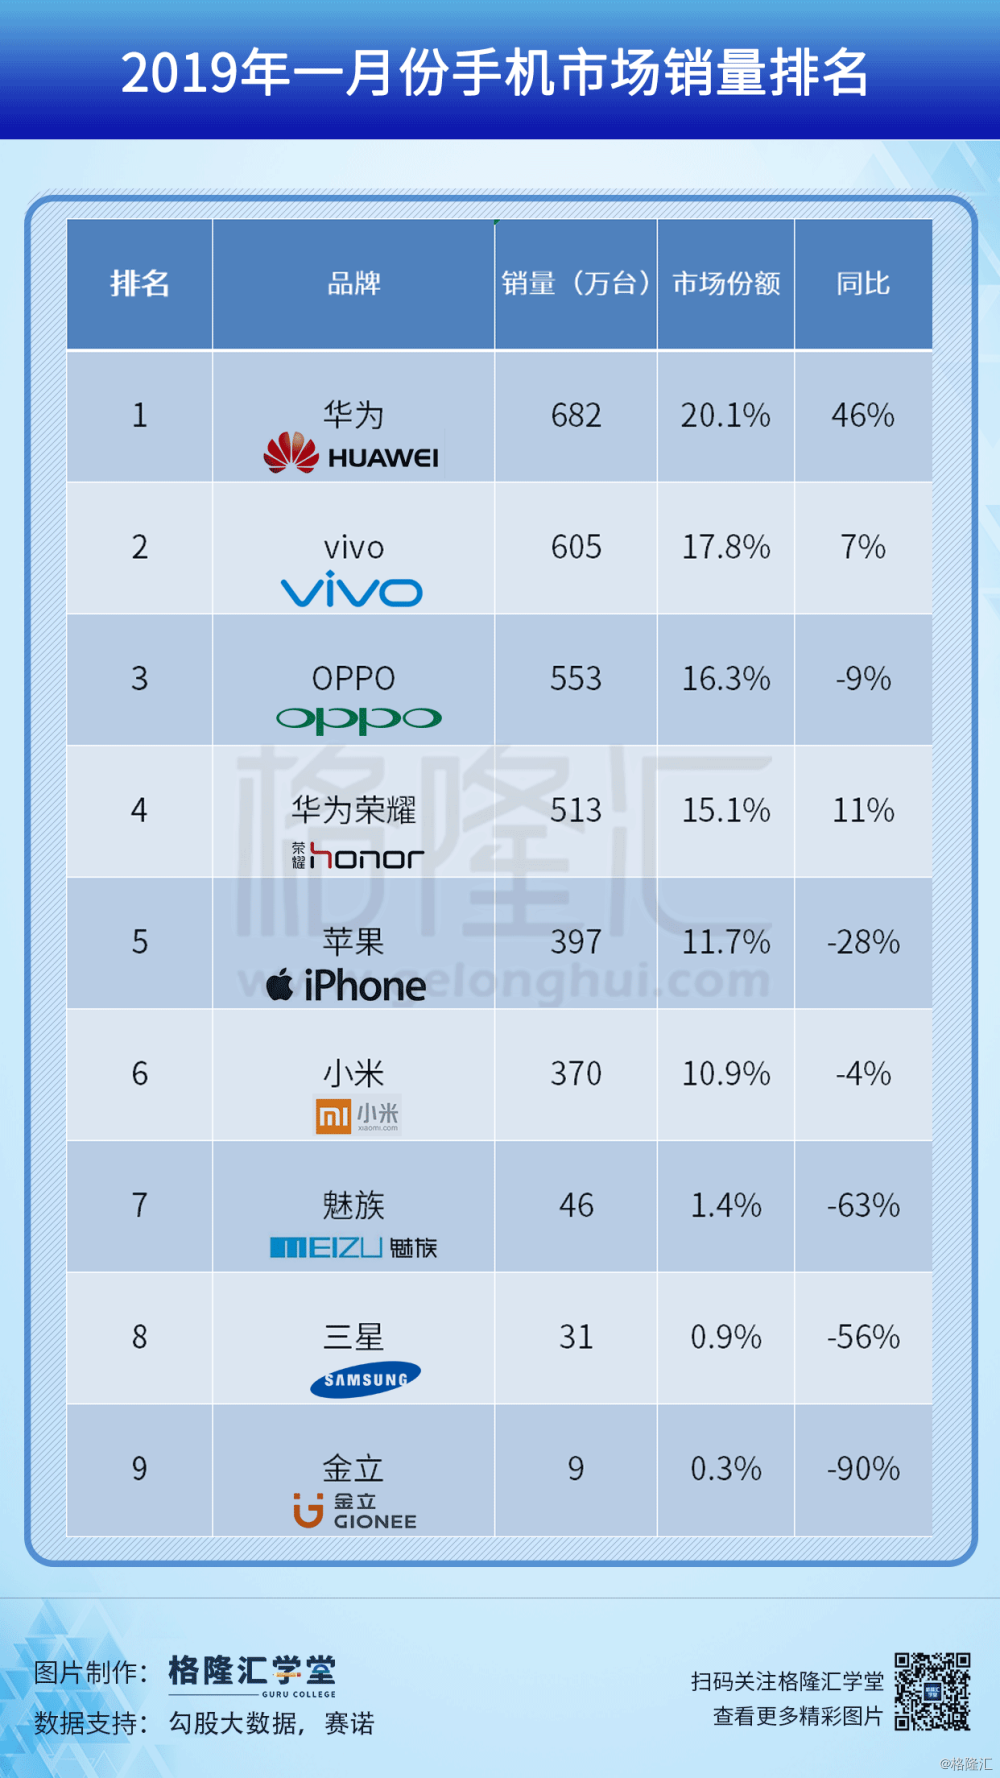 2019国内手机销量排行_2019年上半年手机品牌国内销量排行榜出炉 华为第